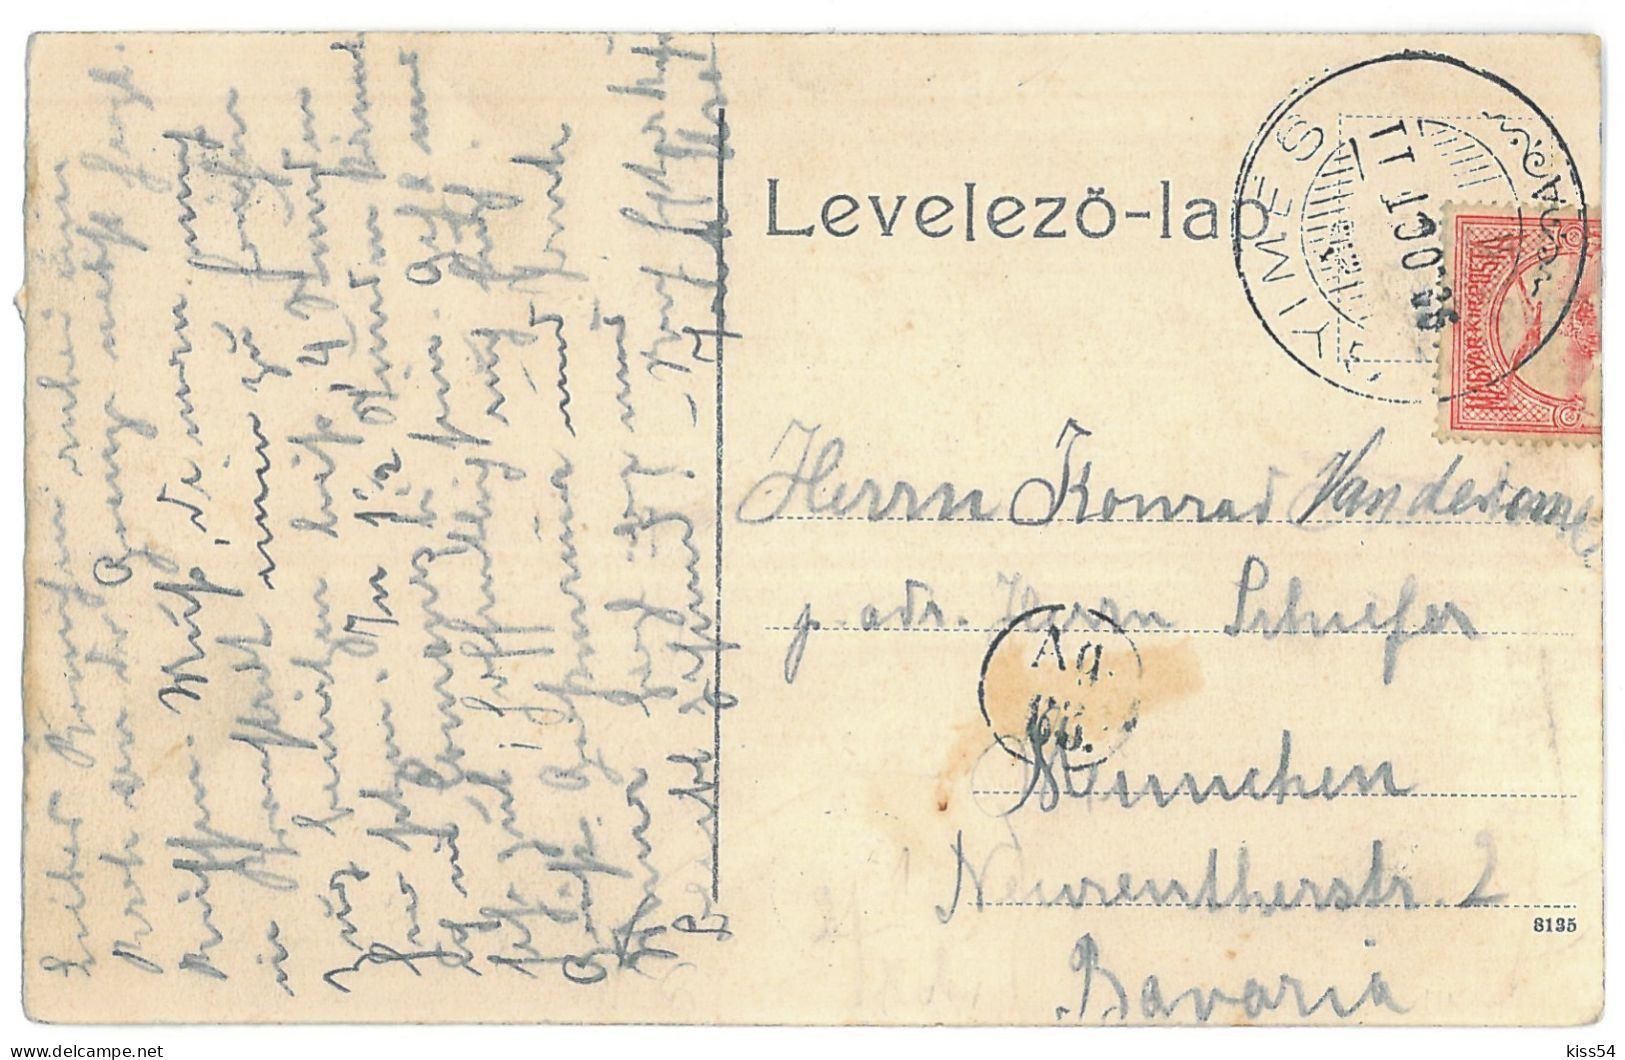 RO 97 - 14126 GHIMES, Bacau, Railways, Romania - Old Postcard - Used - 1909 - Rumänien